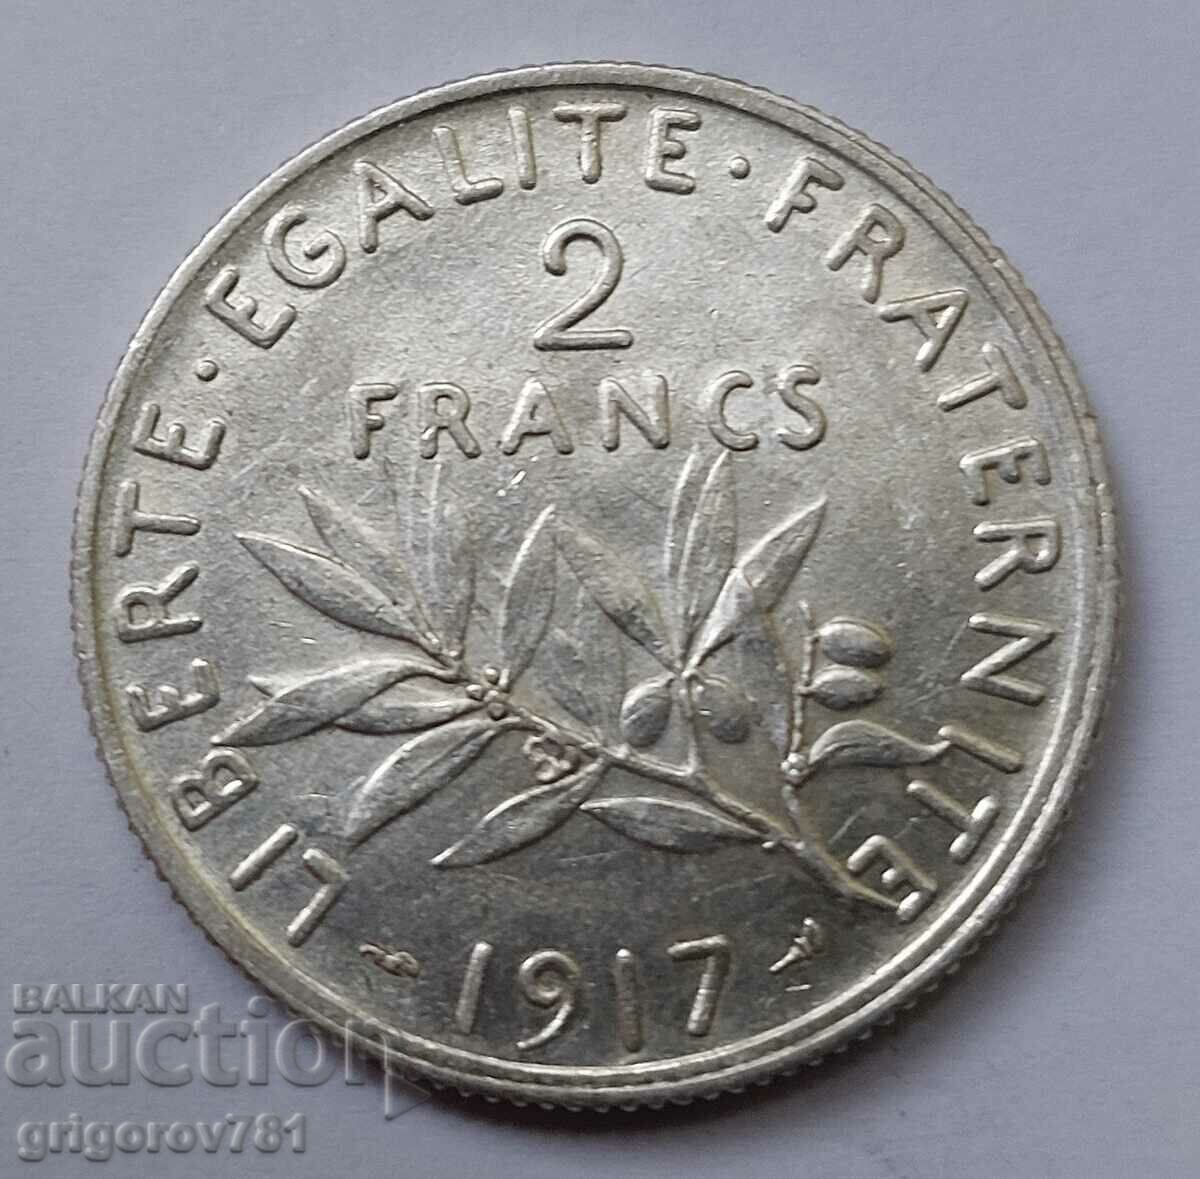 2 Franci Argint Franta 1917 - Moneda de argint #48